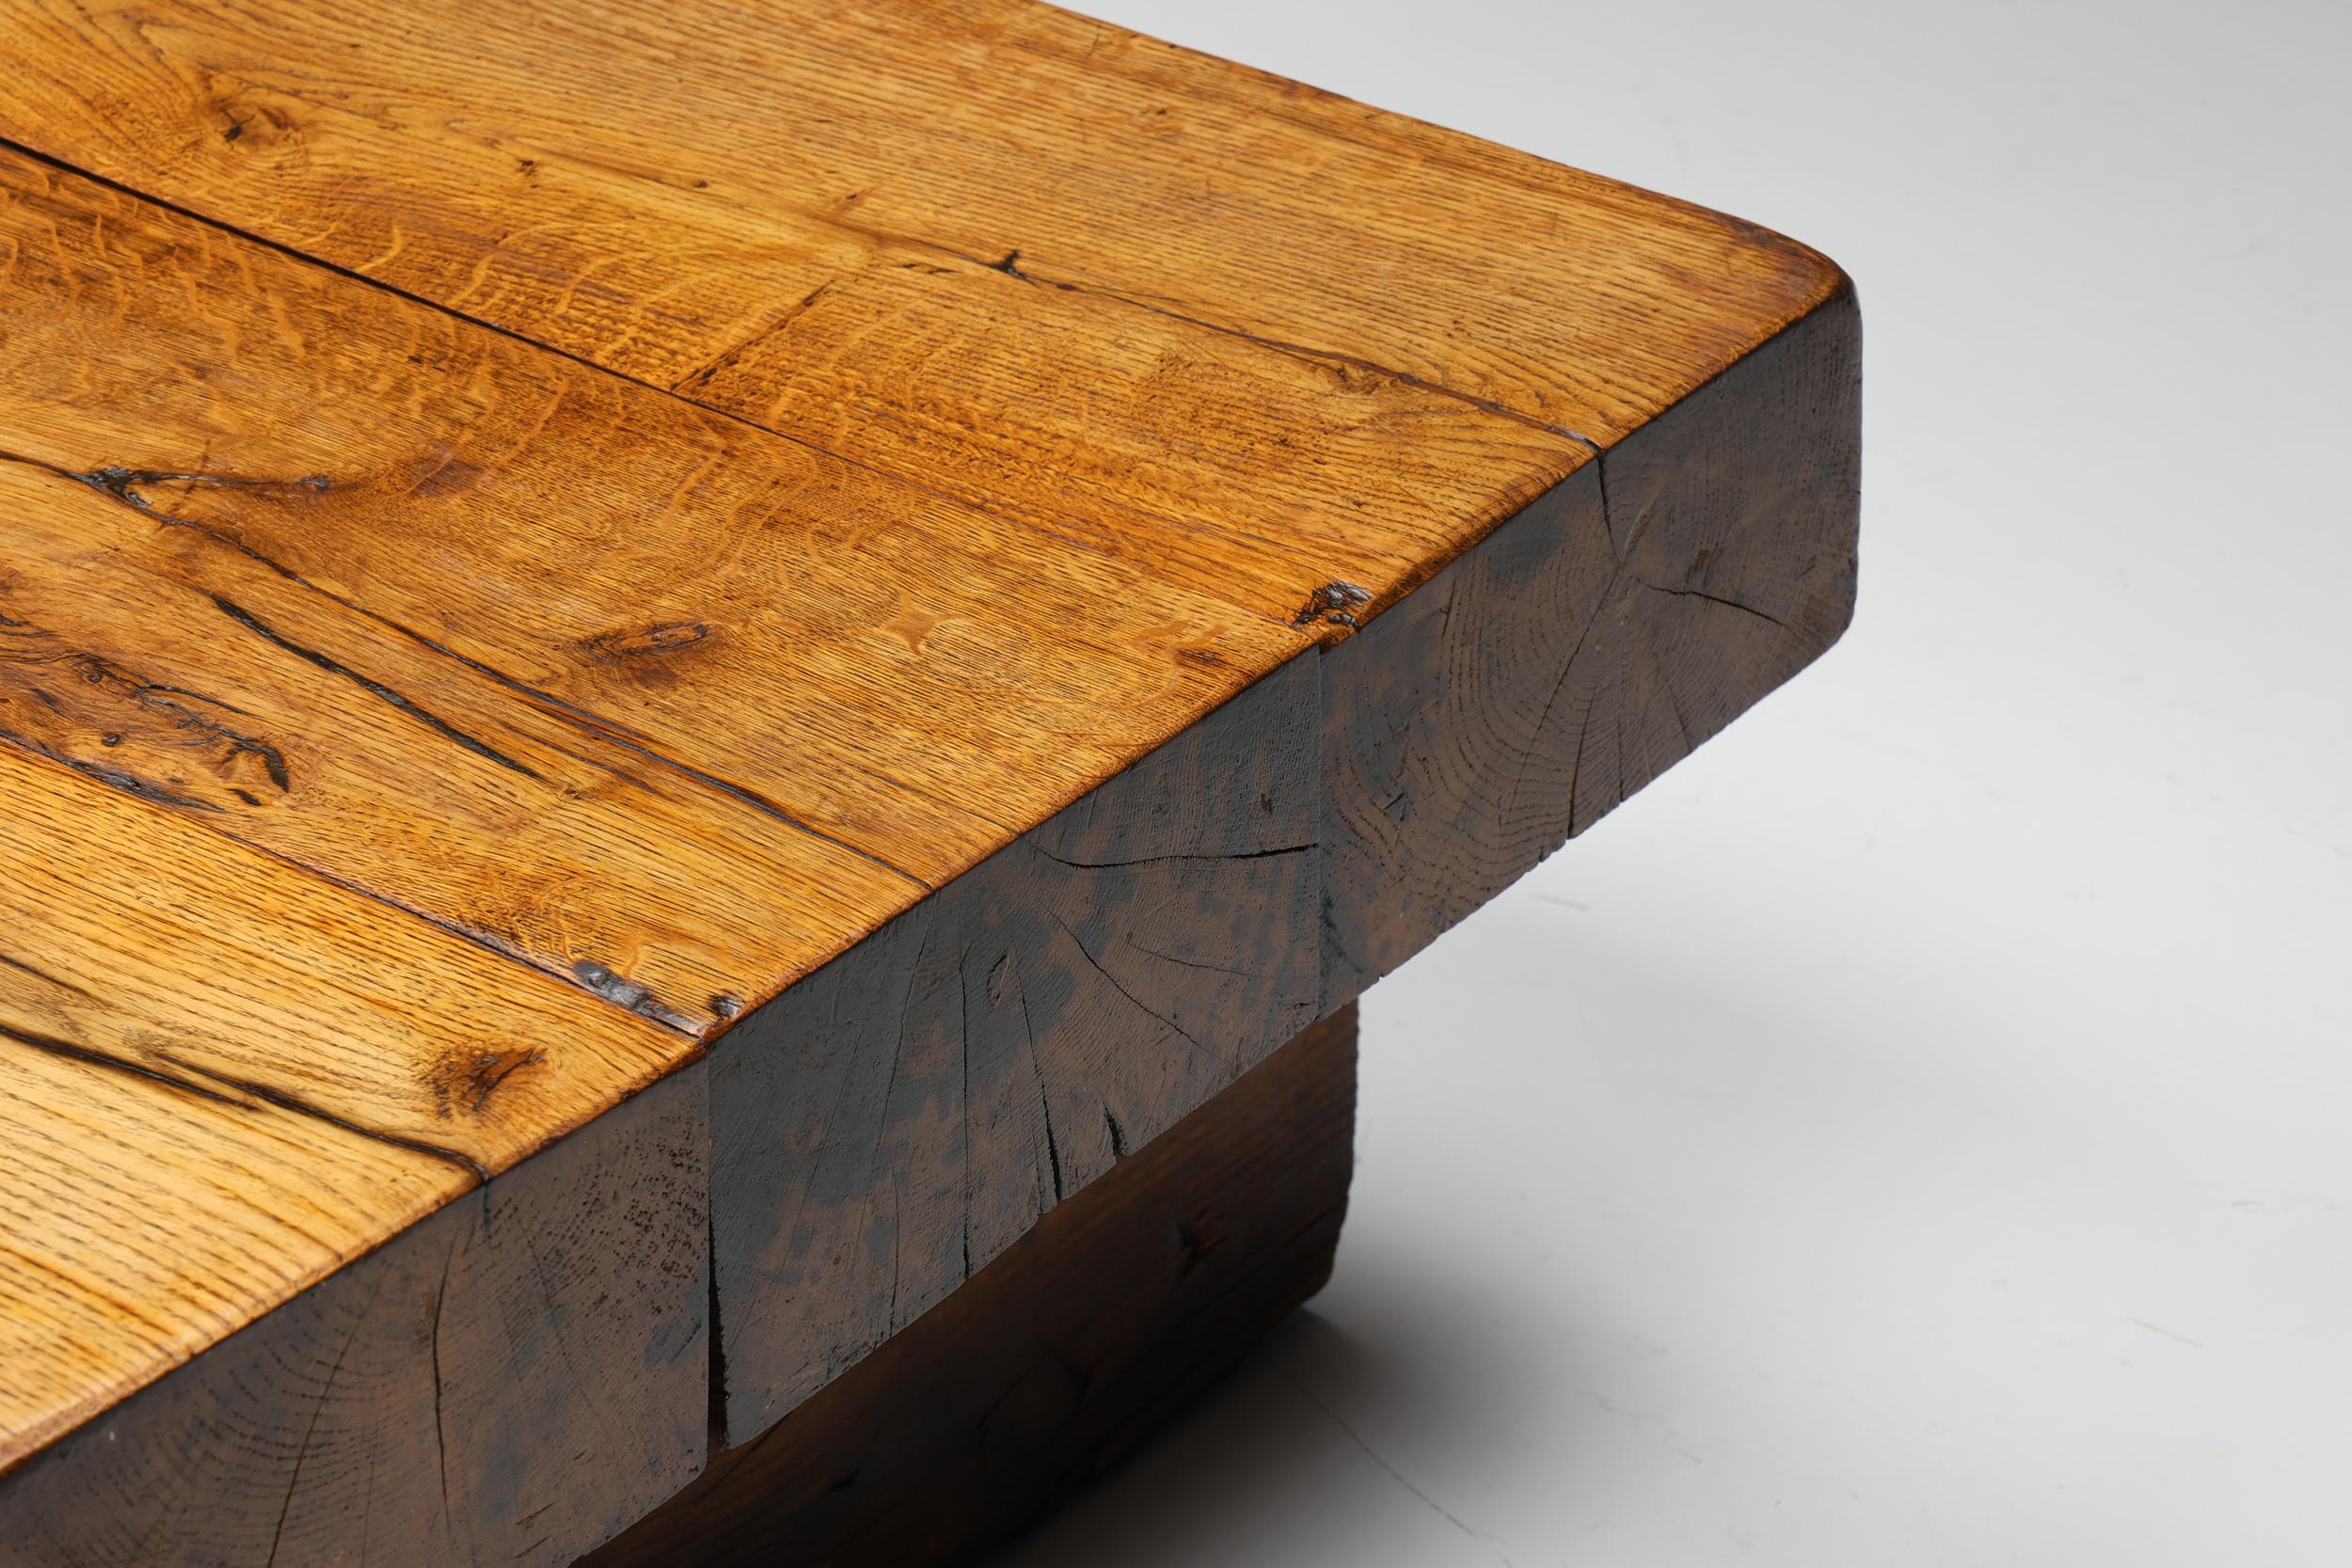 Wood Rectangular Wabi Sabi Table with Screws, Rustic, Mid-Century, Patina, 1950's